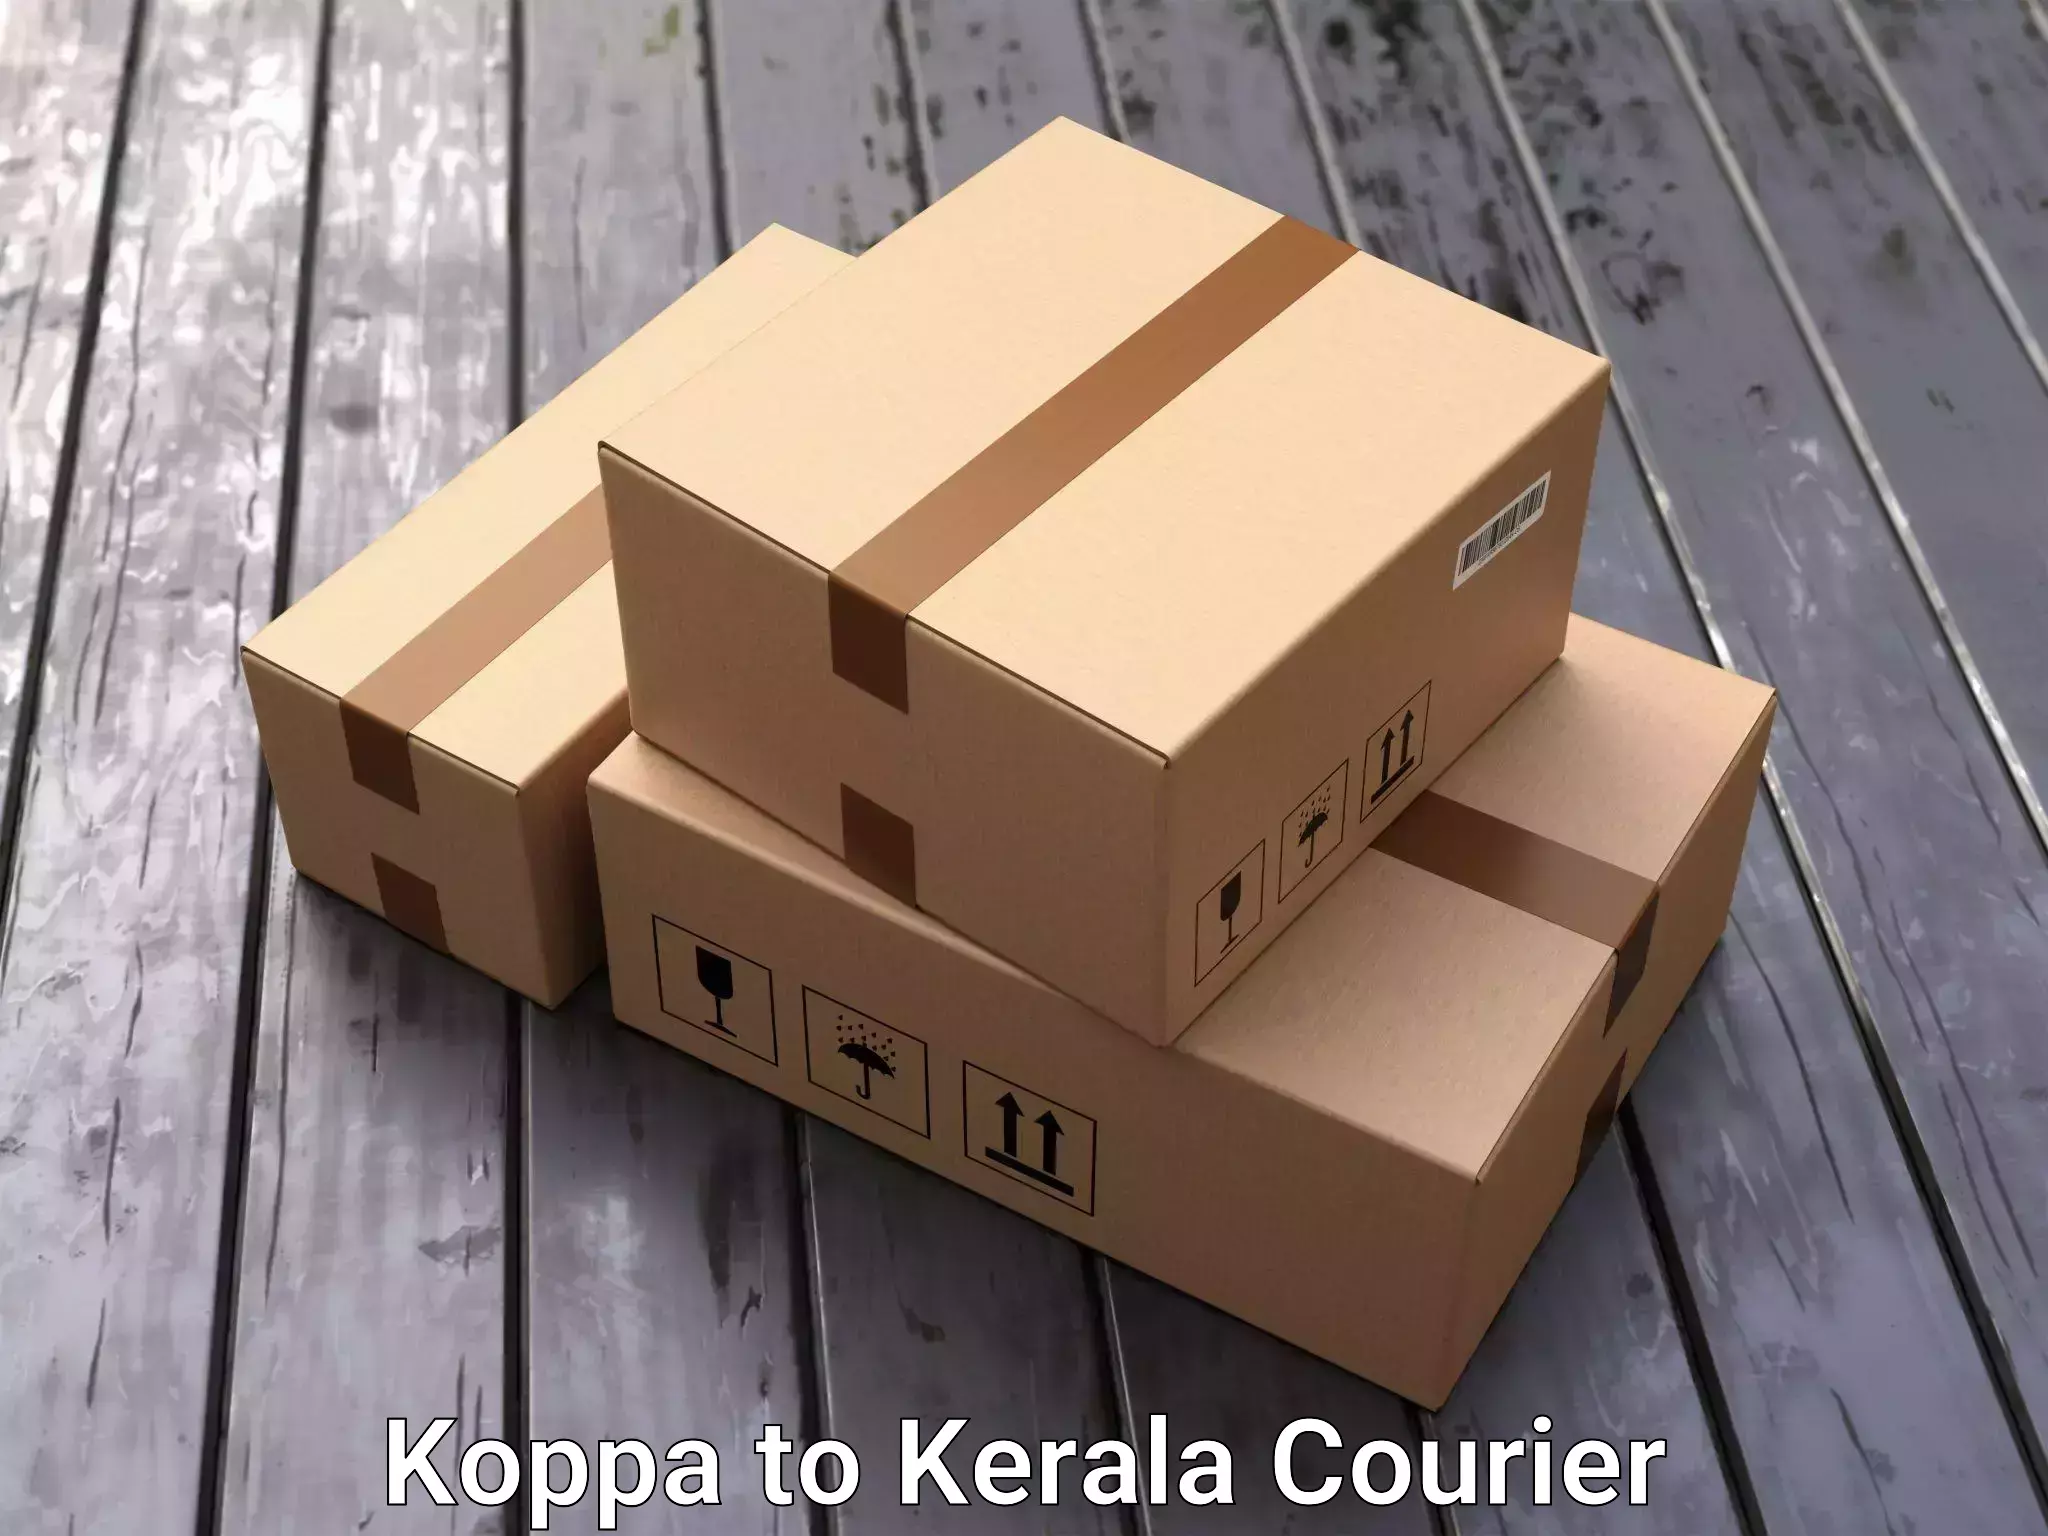 Trusted furniture transport Koppa to Kerala